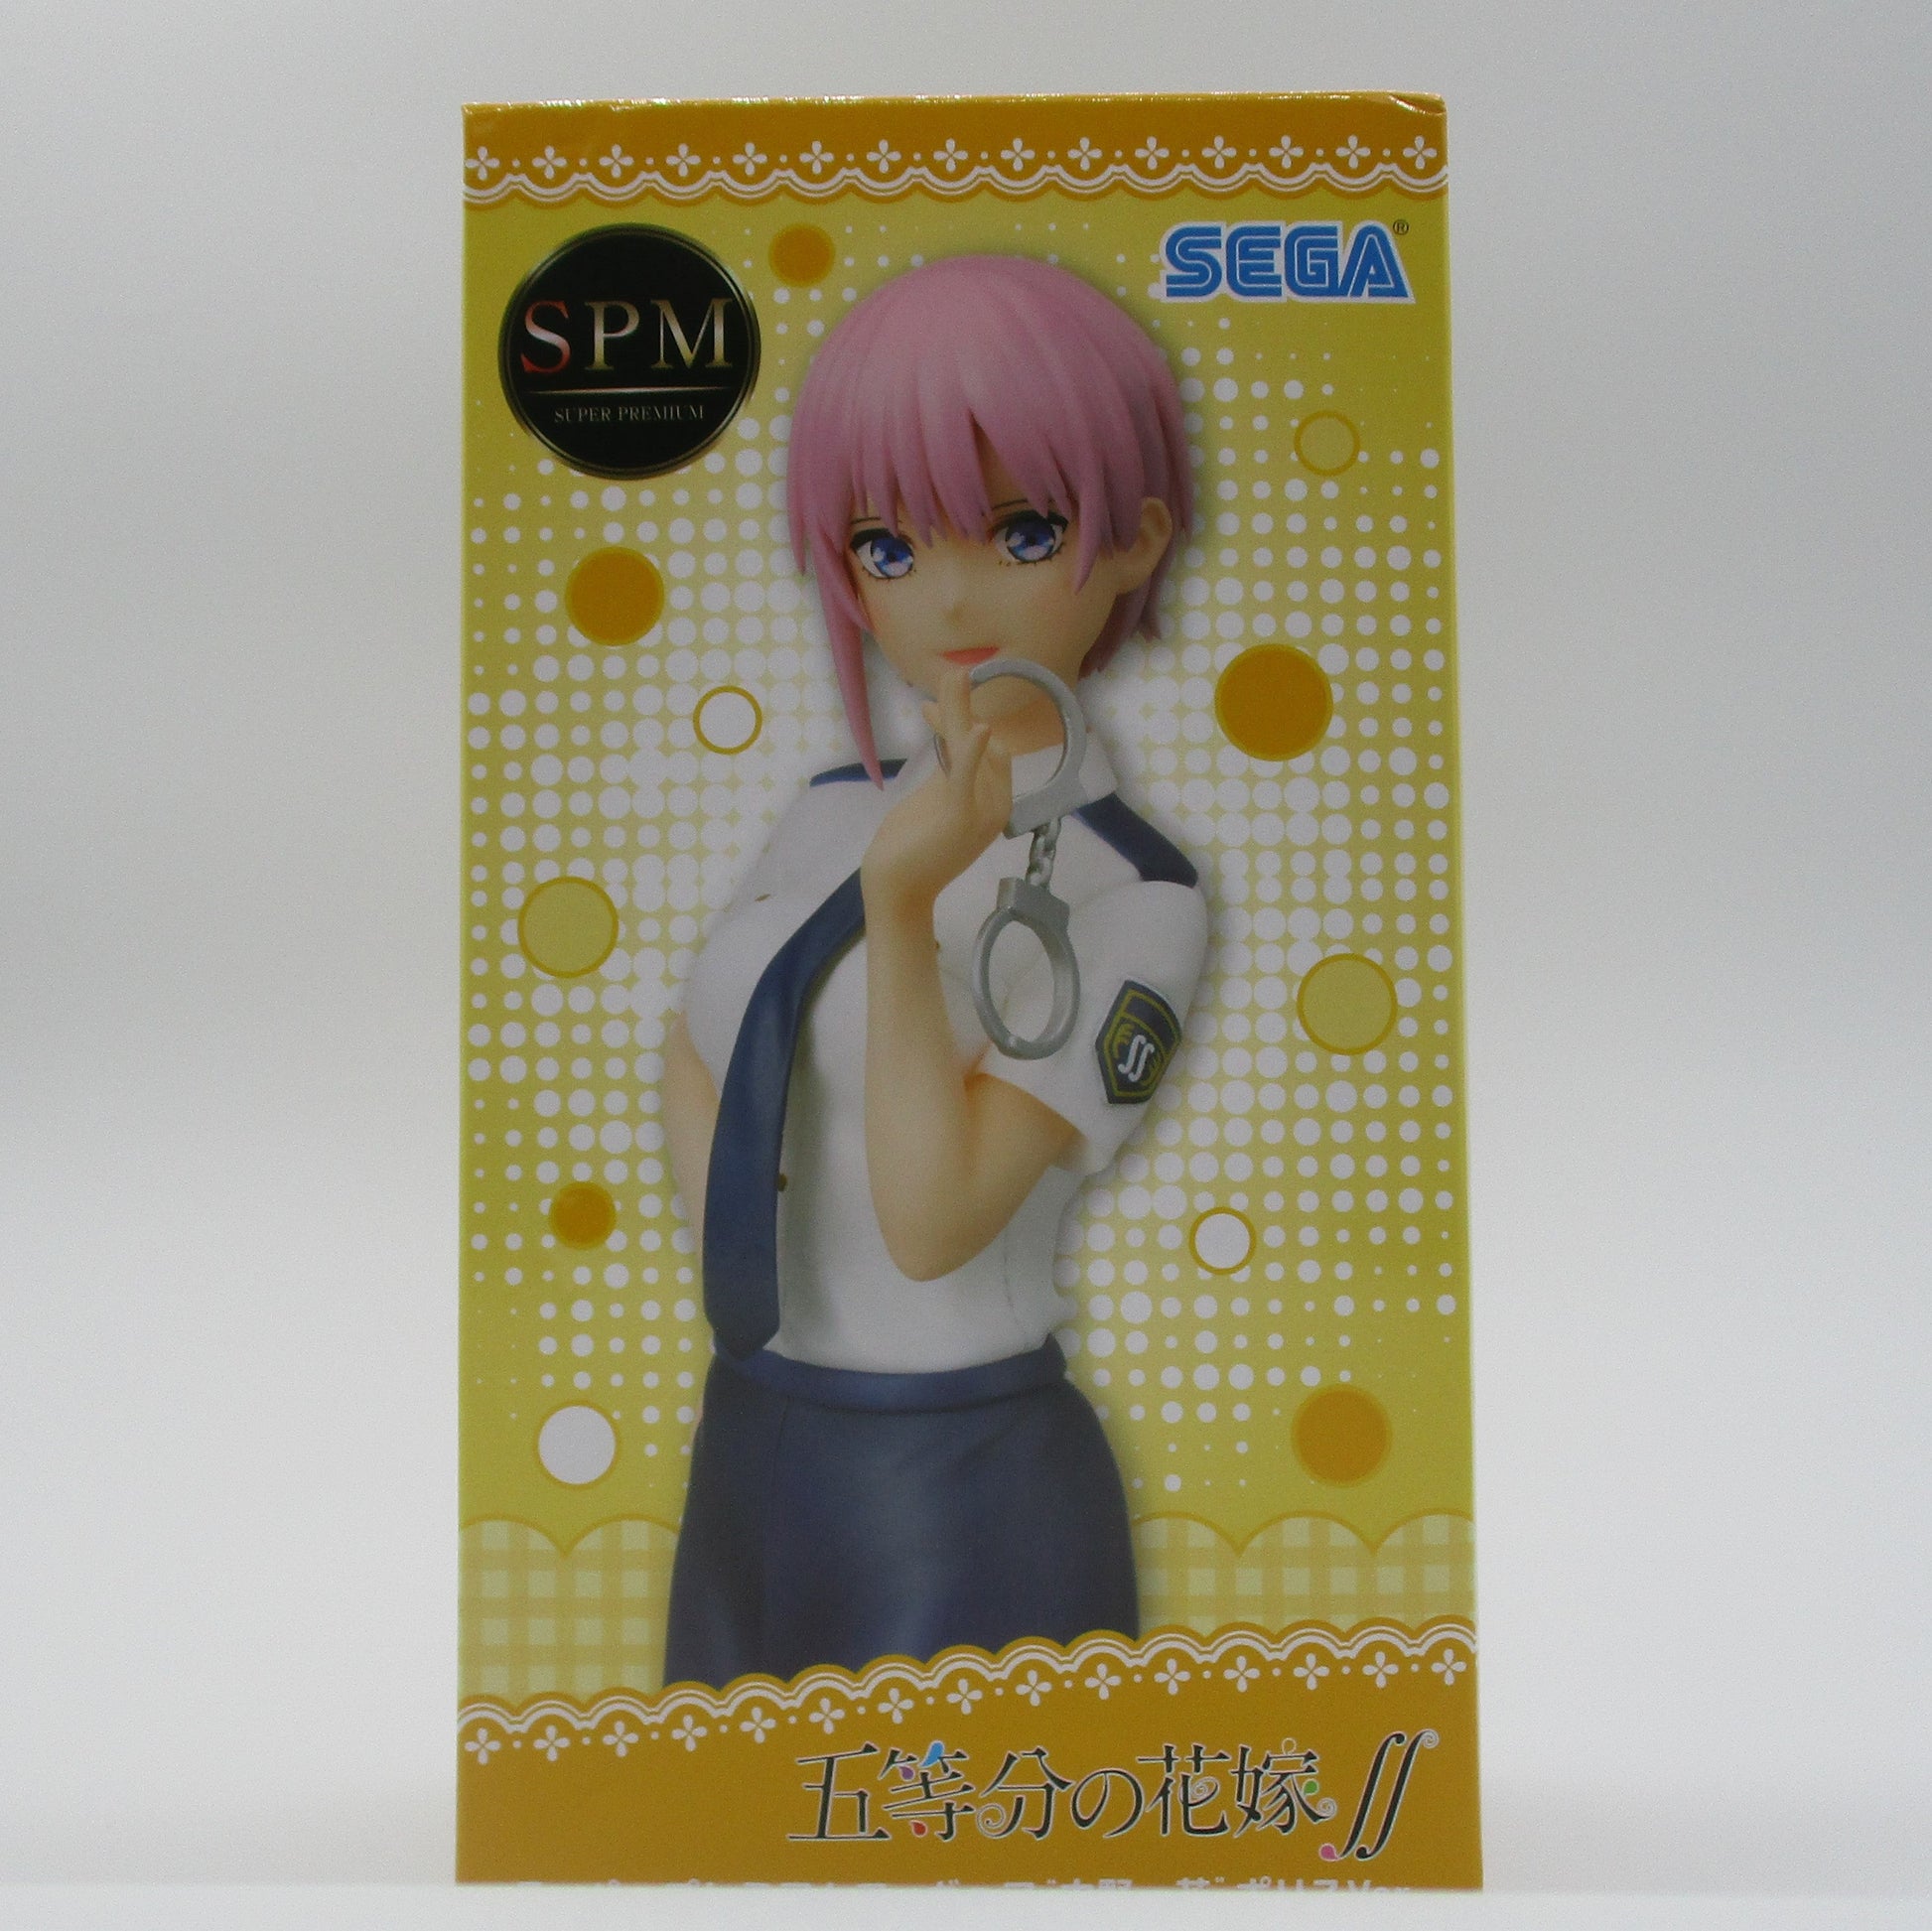 Sega 5 equal bride ∬ Super Premium Figure "Kazuhana Nakano" Police ver. 1058363 | animota